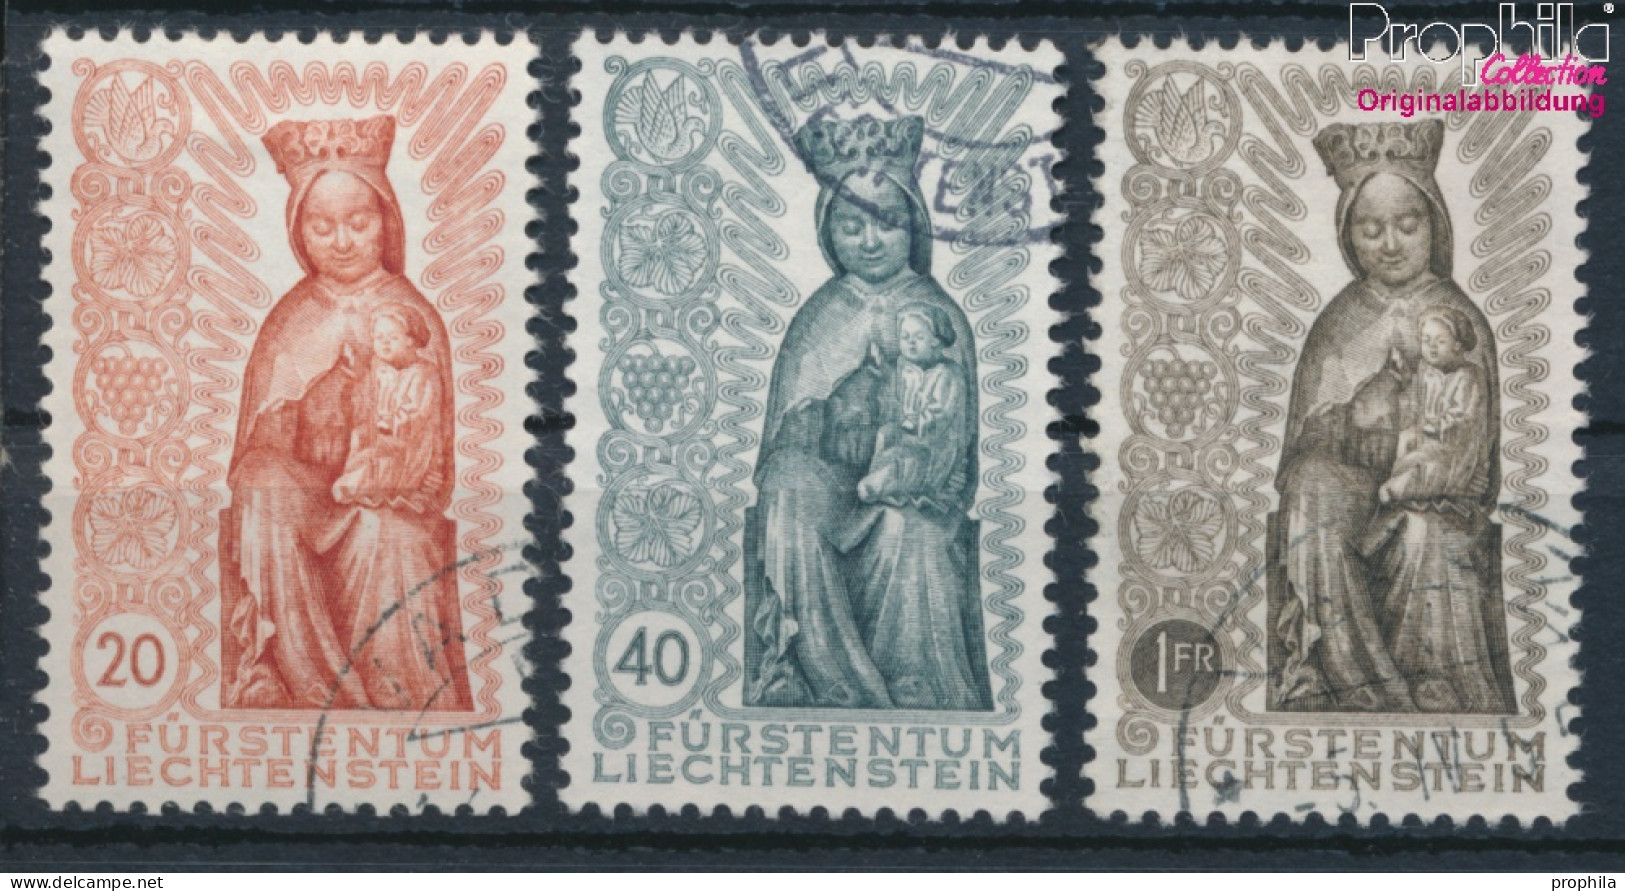 Liechtenstein 329-331 (kompl.Ausg.) Gestempelt 1954 Marianisches Jahr (10331918 - Usati